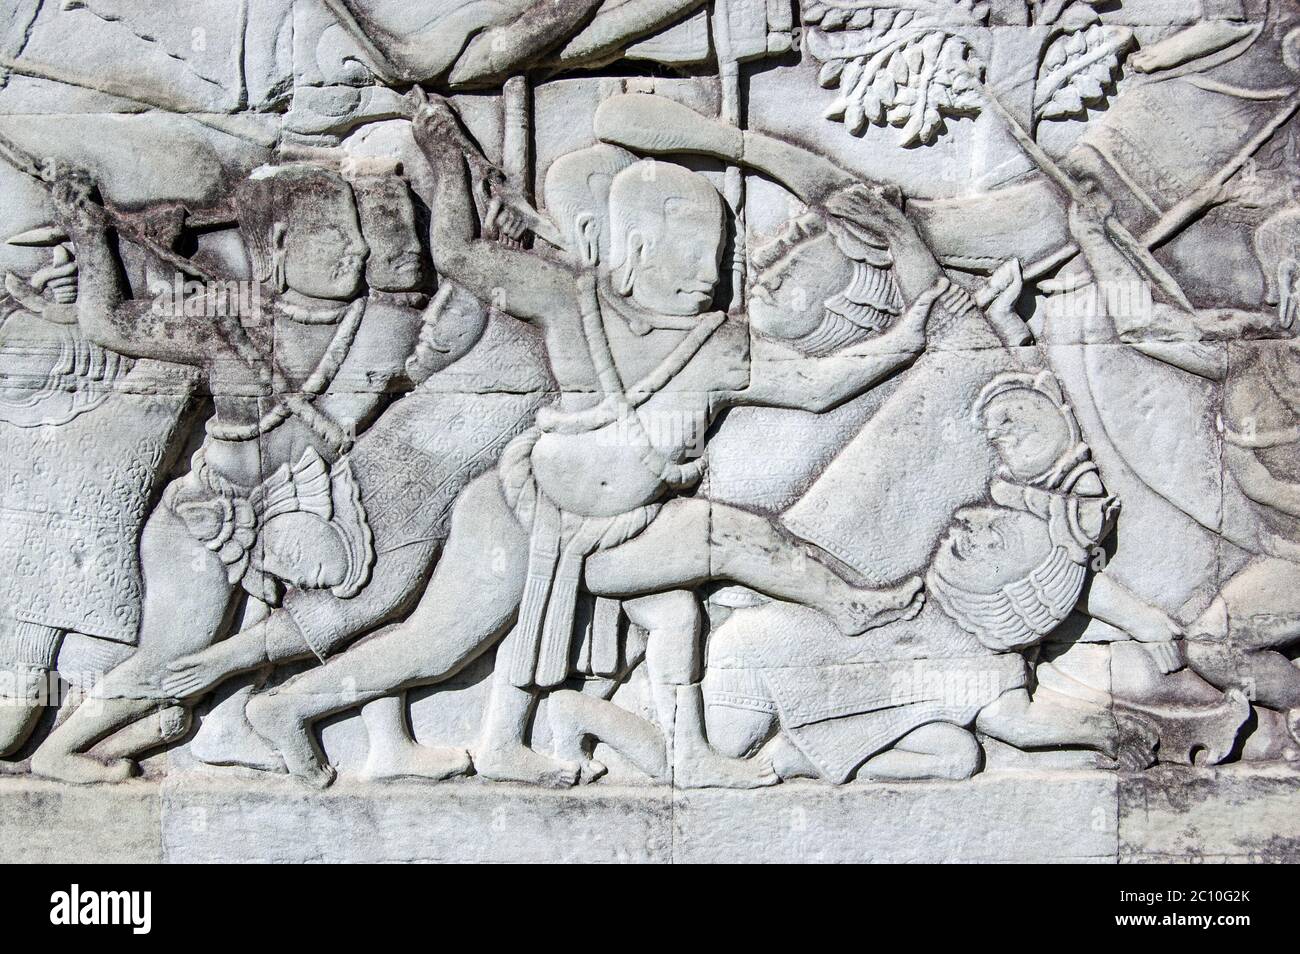 Antica scultura in bassorilievo Khmer che mostra un soldato Khmer che sta per uccidere un soldato Cham. Parete esterna del Tempio di Bayon, parte del complesso di Angkor Thom, si Foto Stock